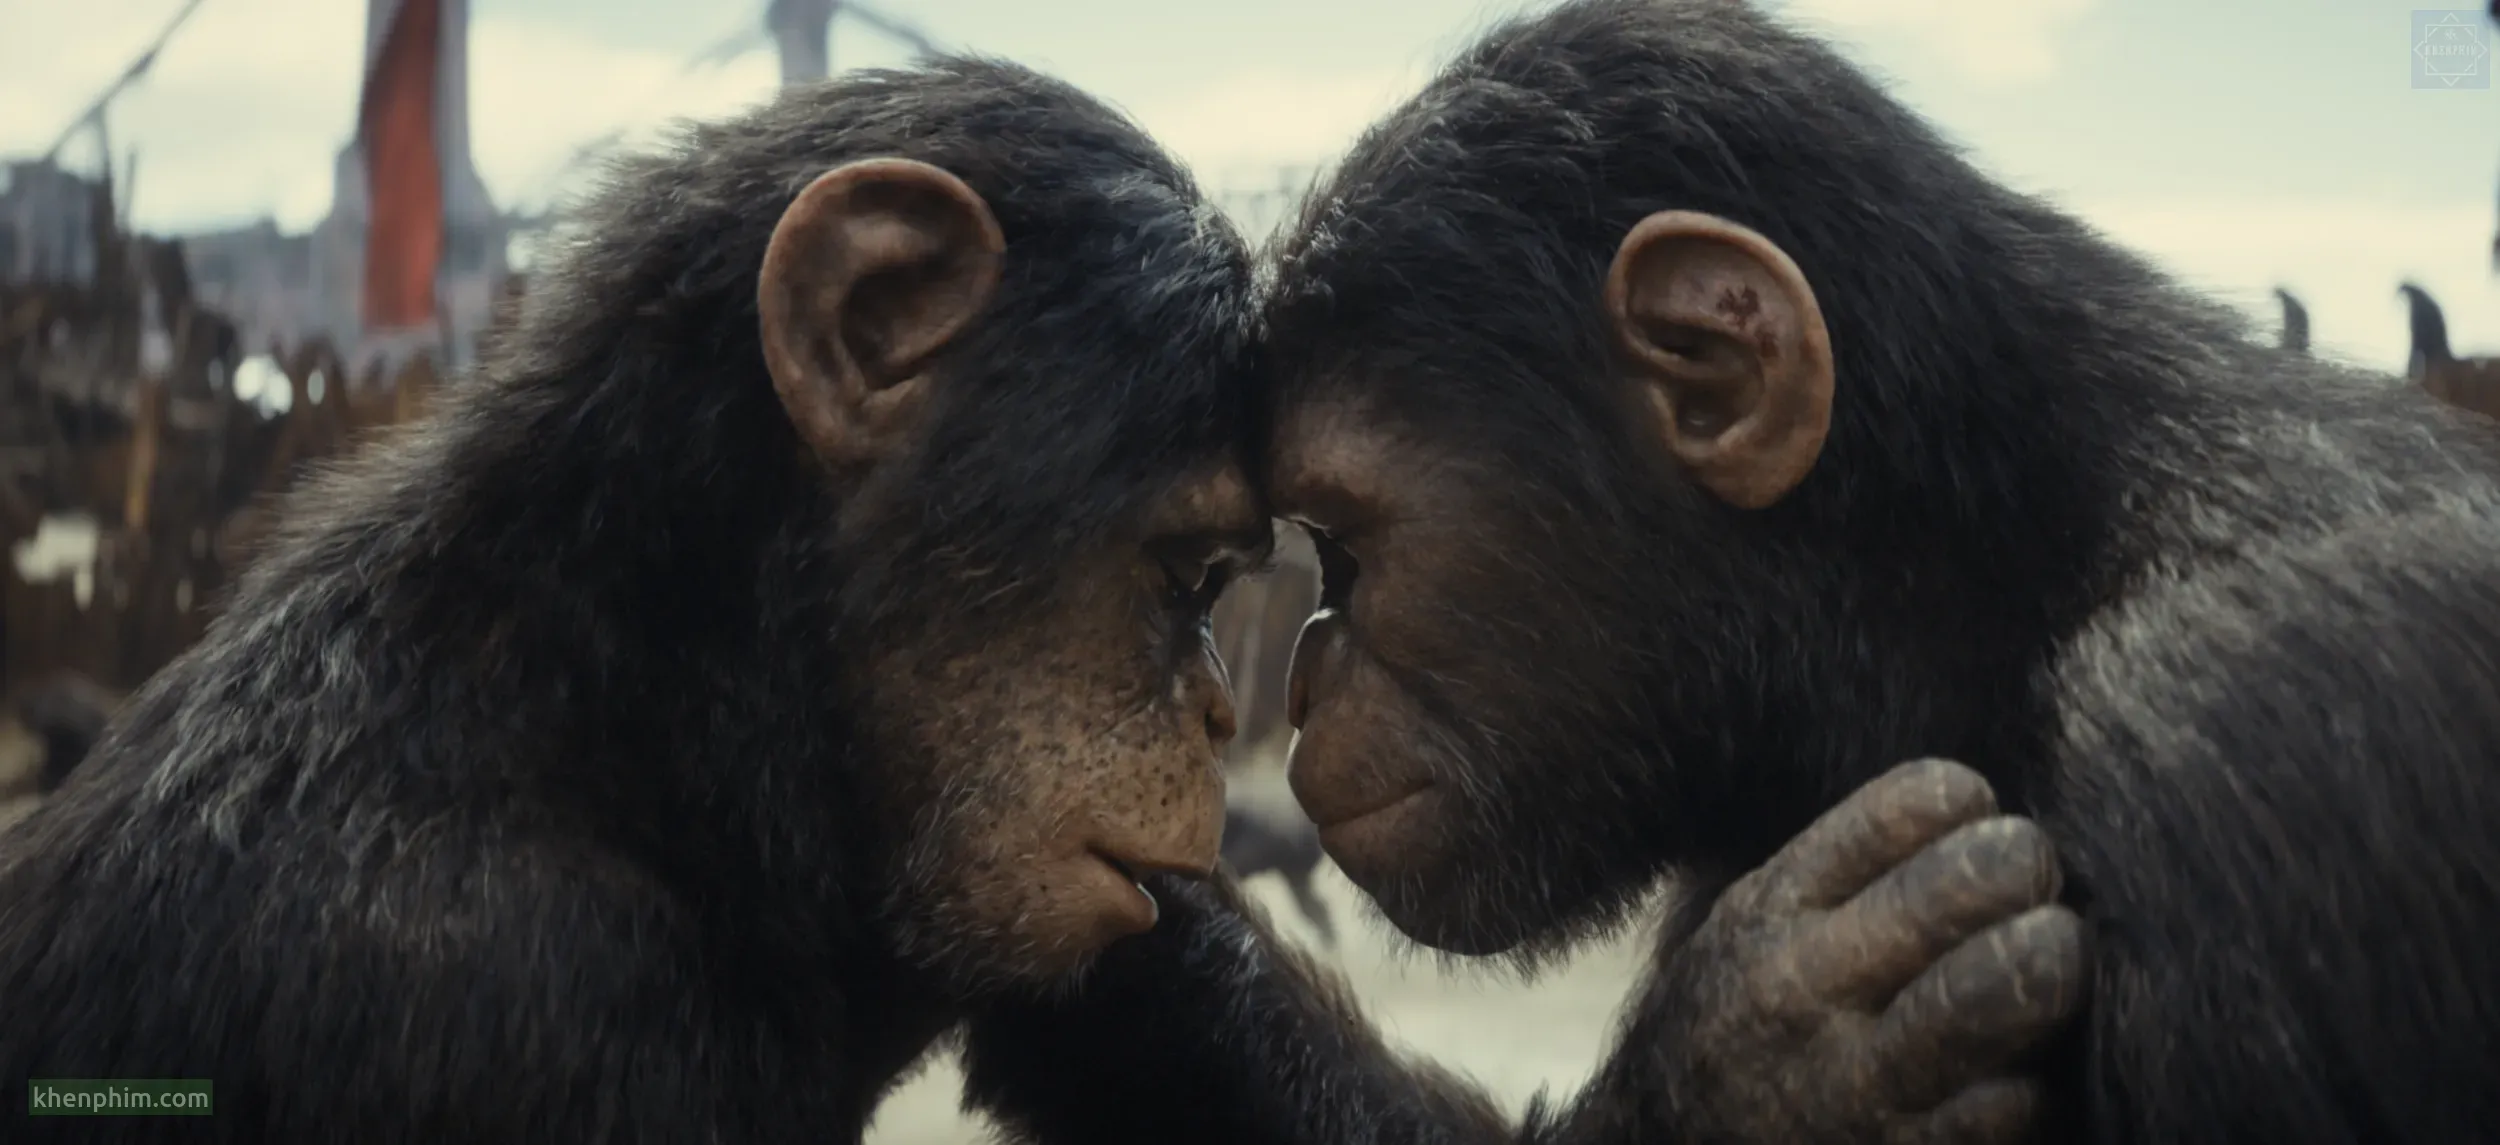 Review phim Hành Tinh Khỉ: Vương Quốc Mới – Vì giống loài hay vì lợi ích chung?